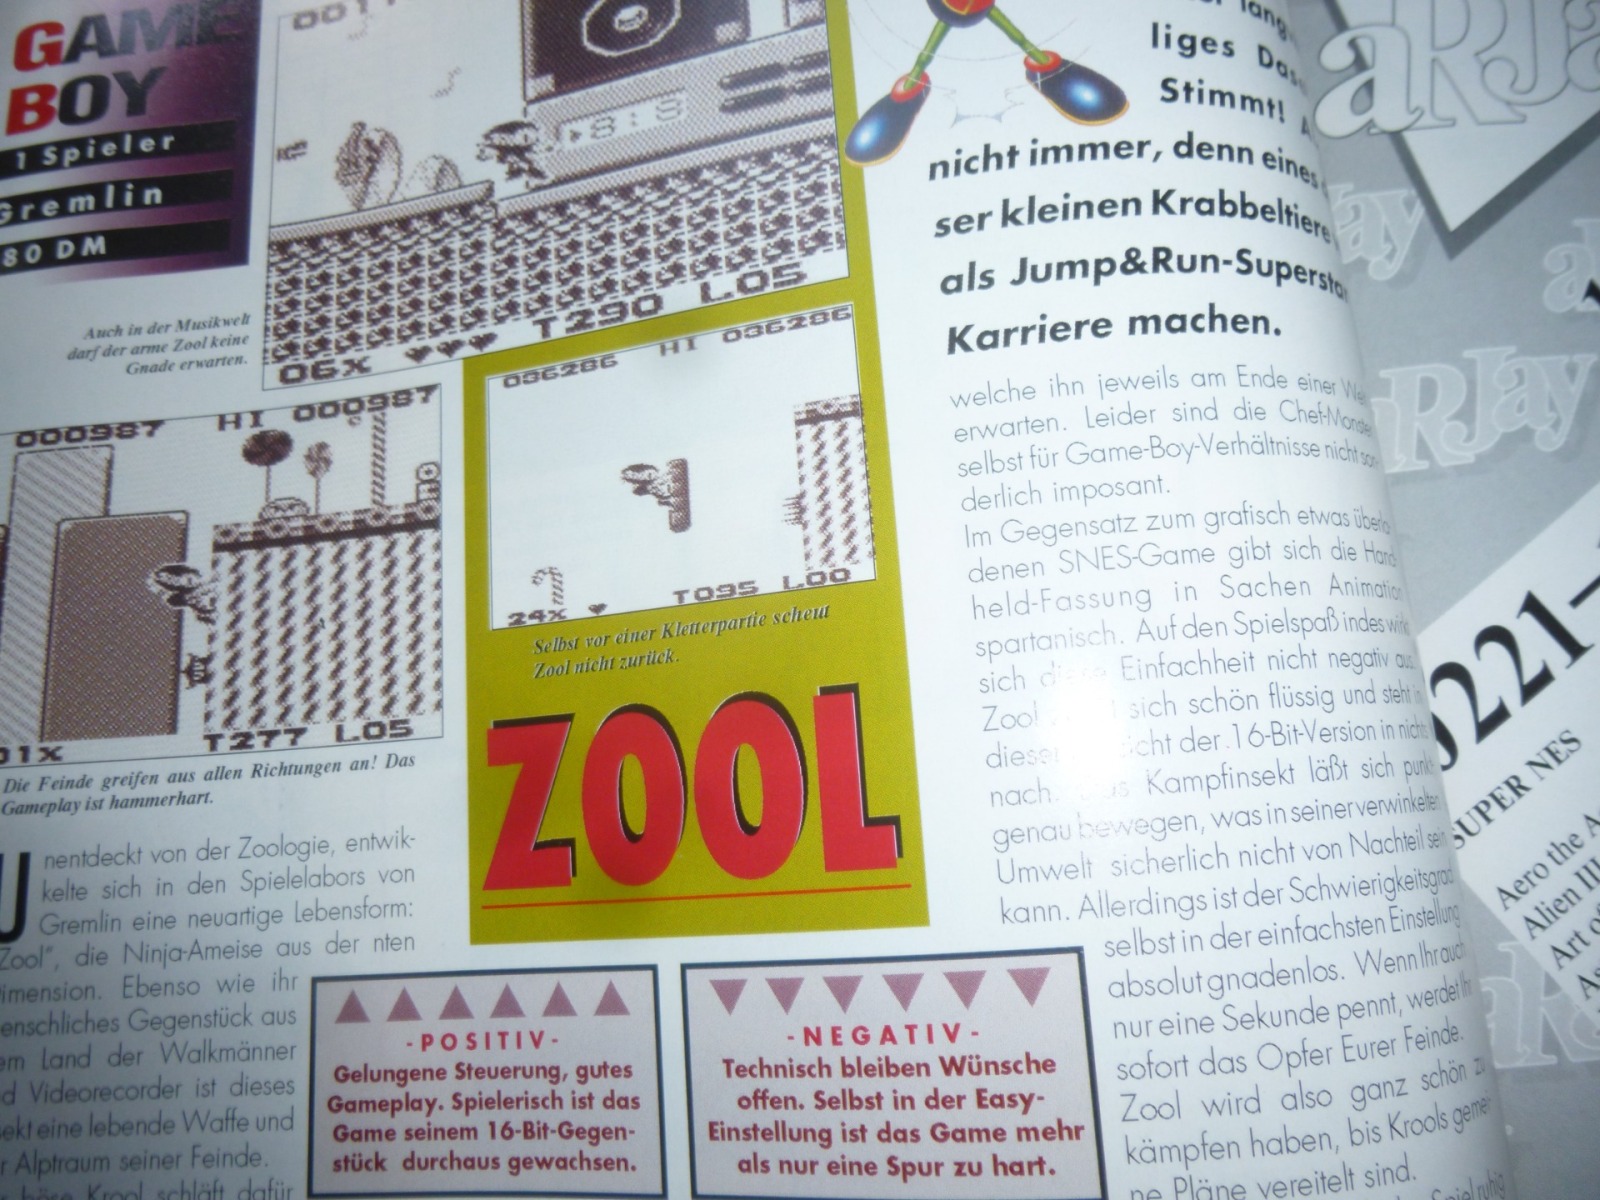 TOTAL Das unabhängige Magazin - 100% Nintendo - Ausgabe 12/93 1993 17